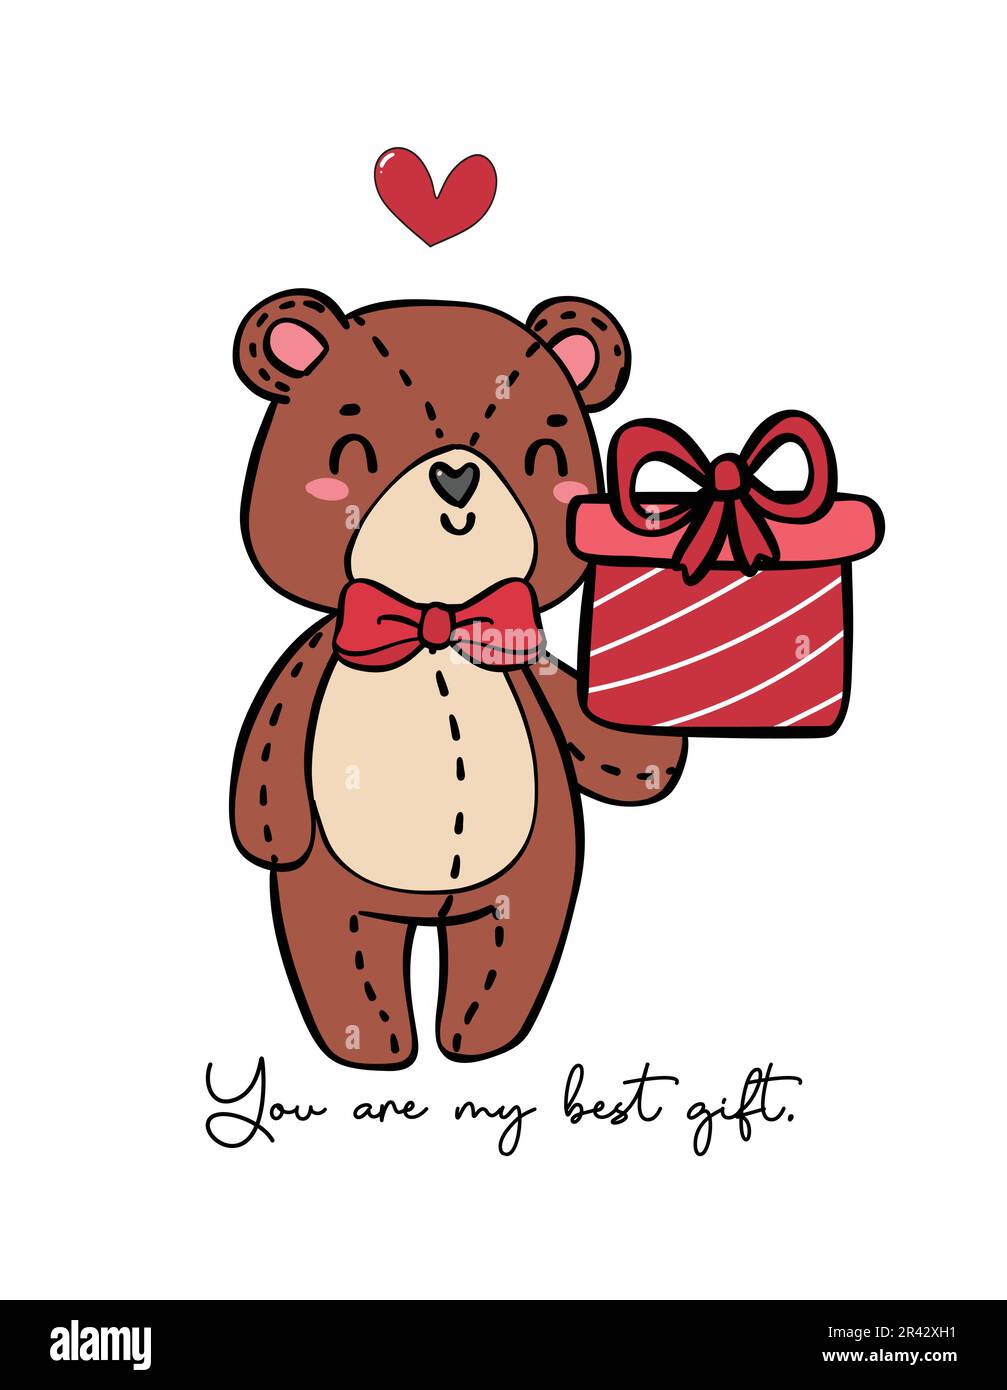 Süßer romantischer Teddybär trägt rote Schleife Geschenkbox Kritzelhand Zeichnen von Zeichentrickfiguren isoliert auf weißem Hintergrund Stock Vektor